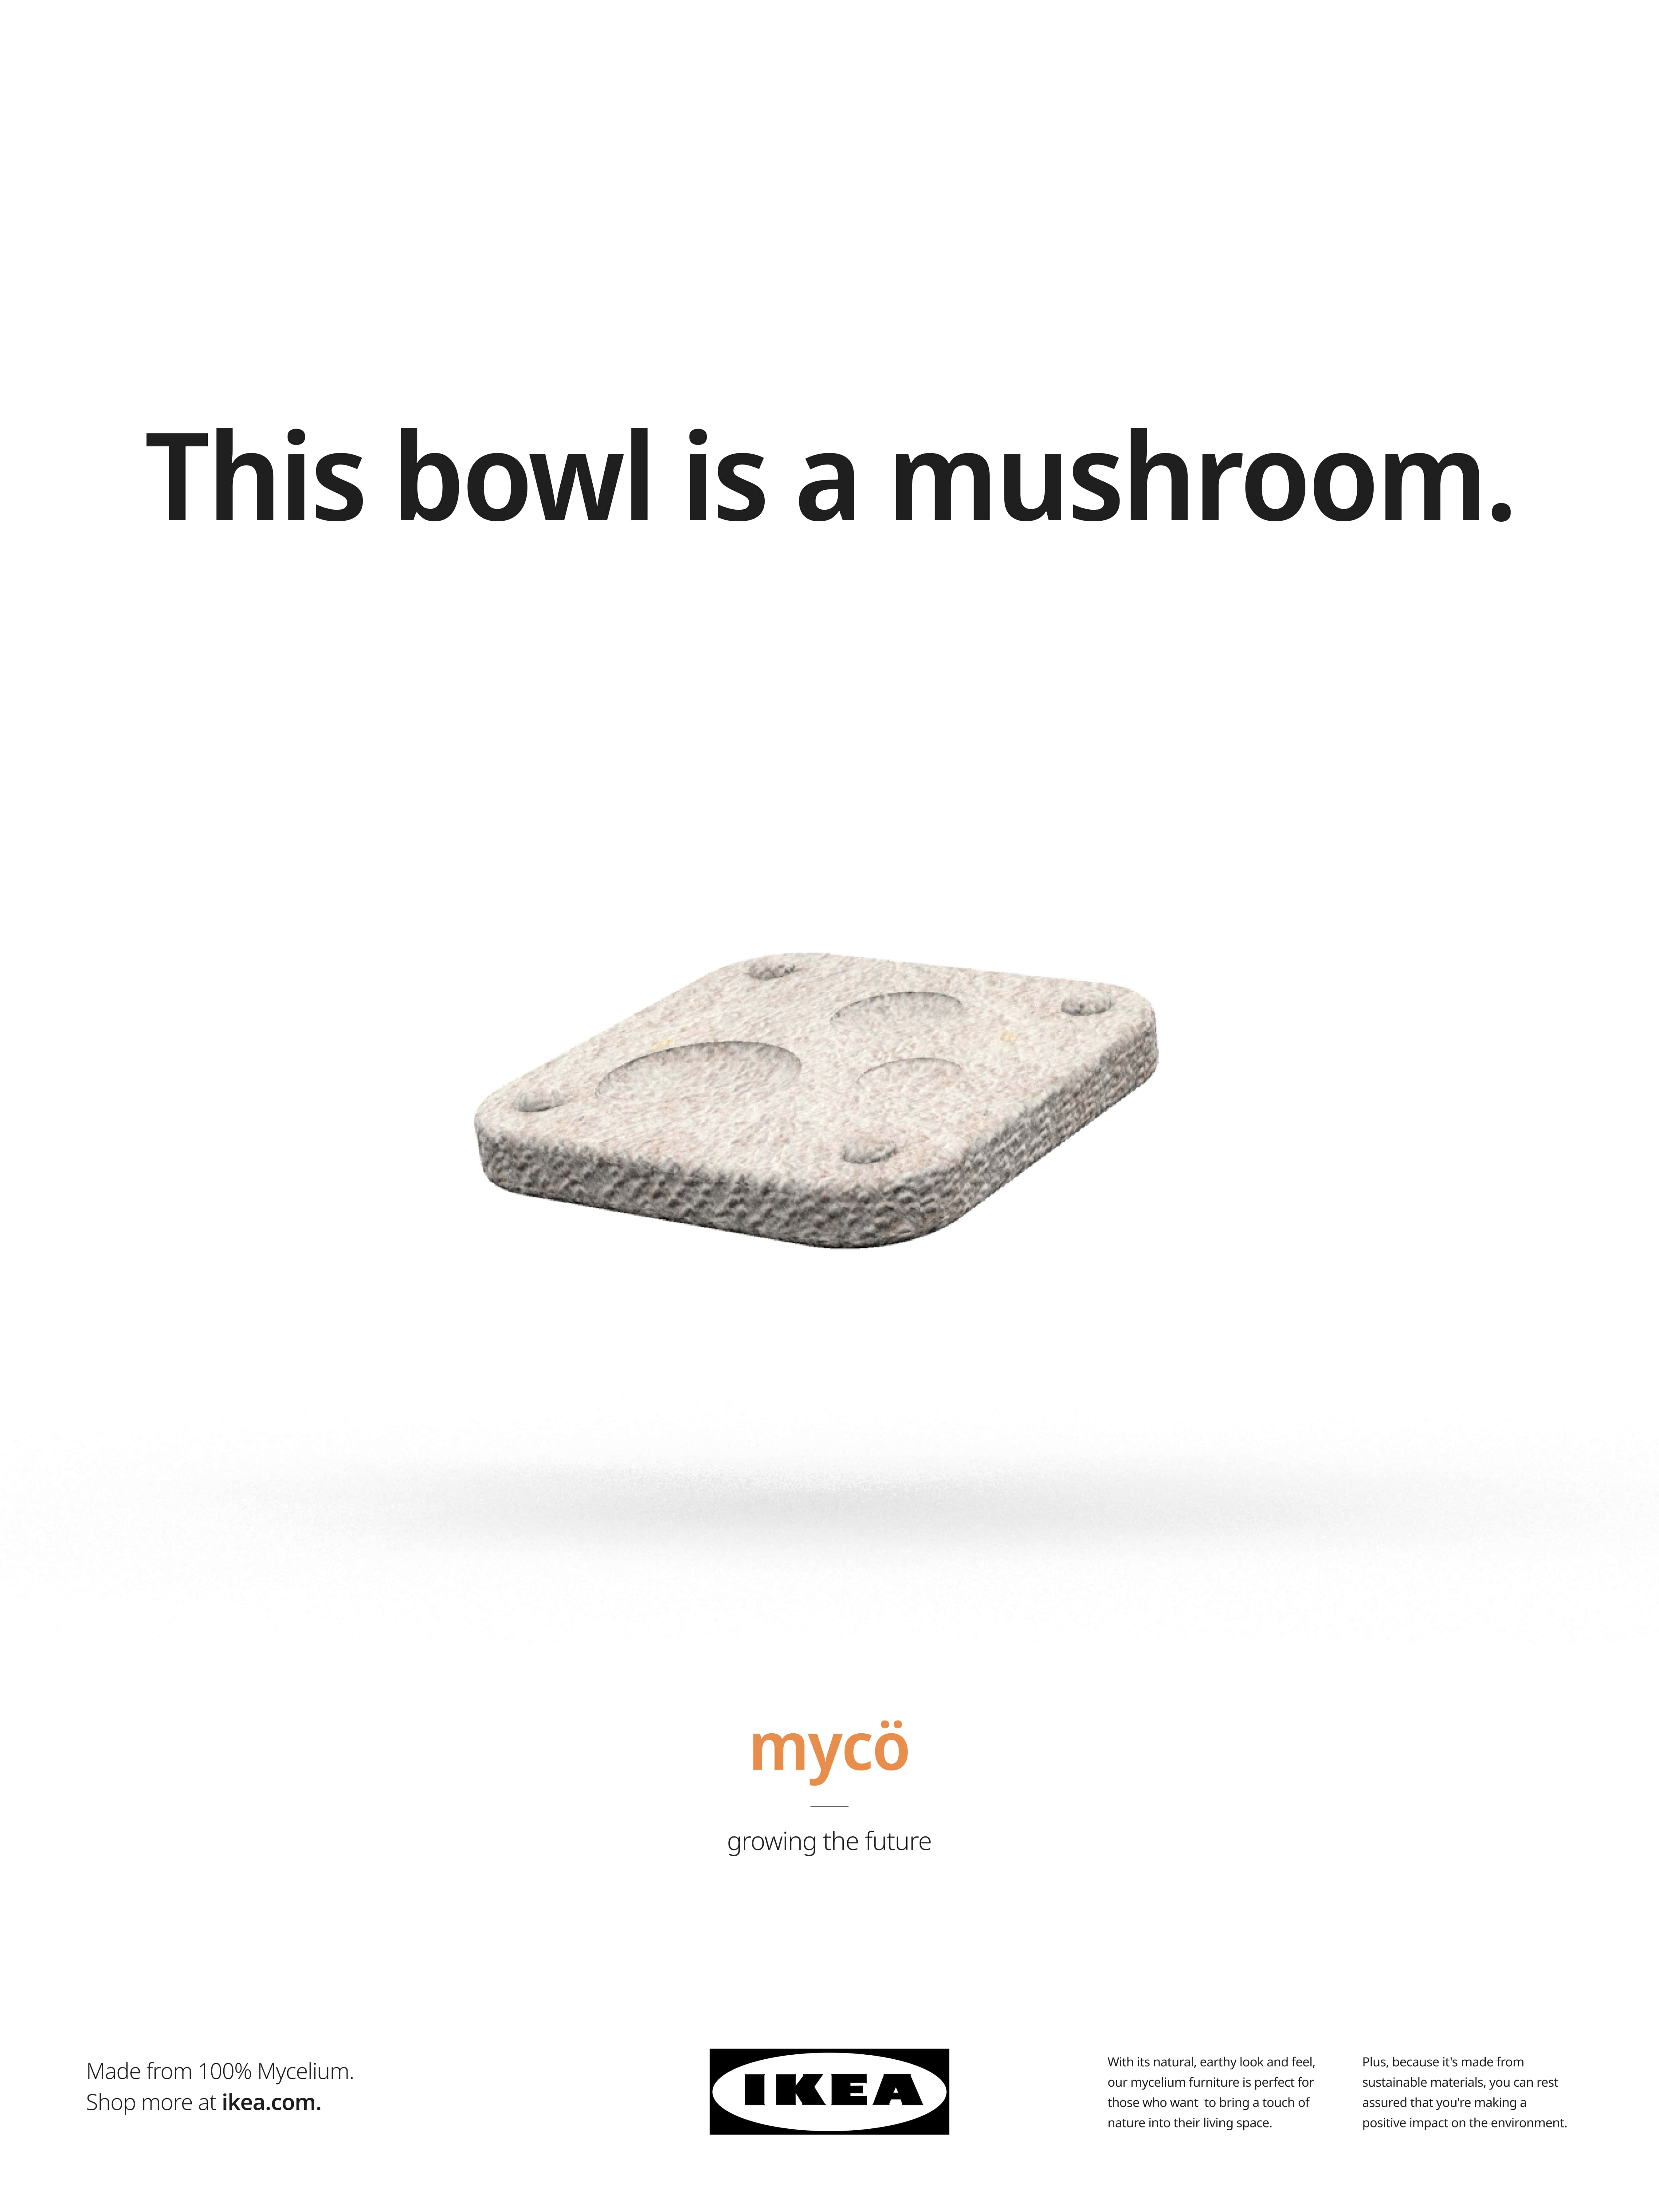 MYCÖ - Growing the Future